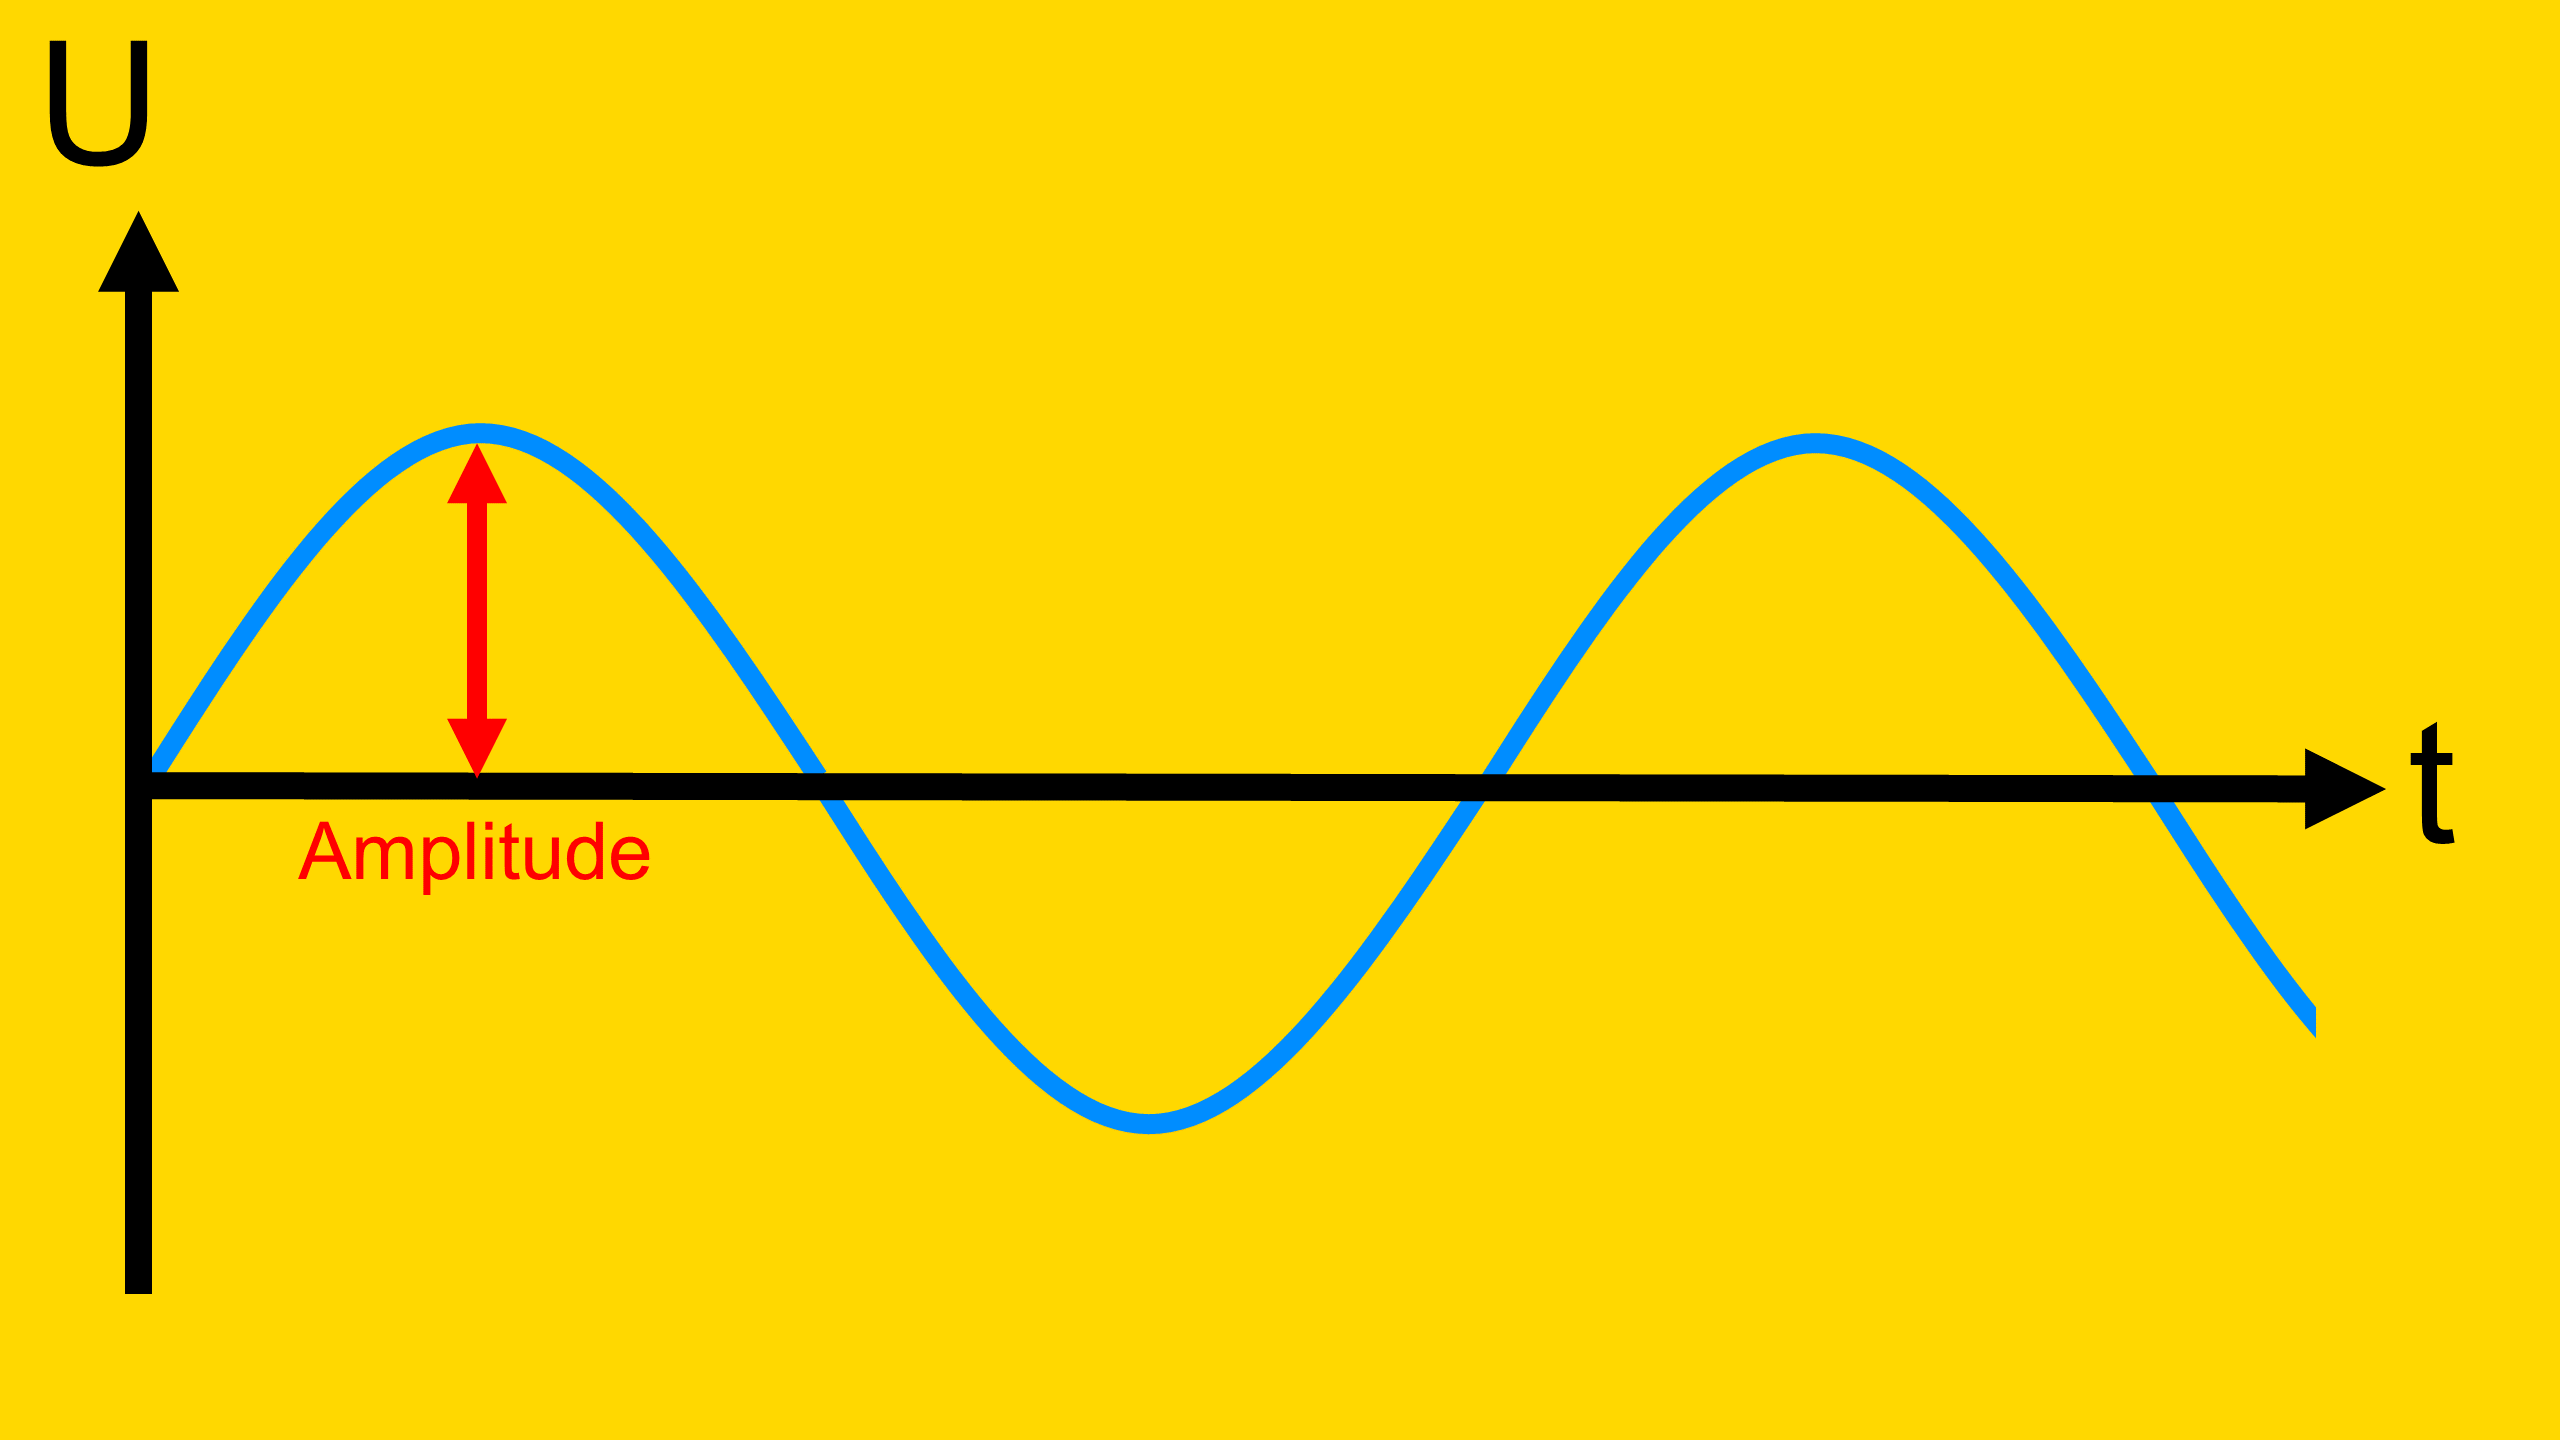 Das Bild zeigt die Amplitude einer Sinusförmigen Wechselspannung